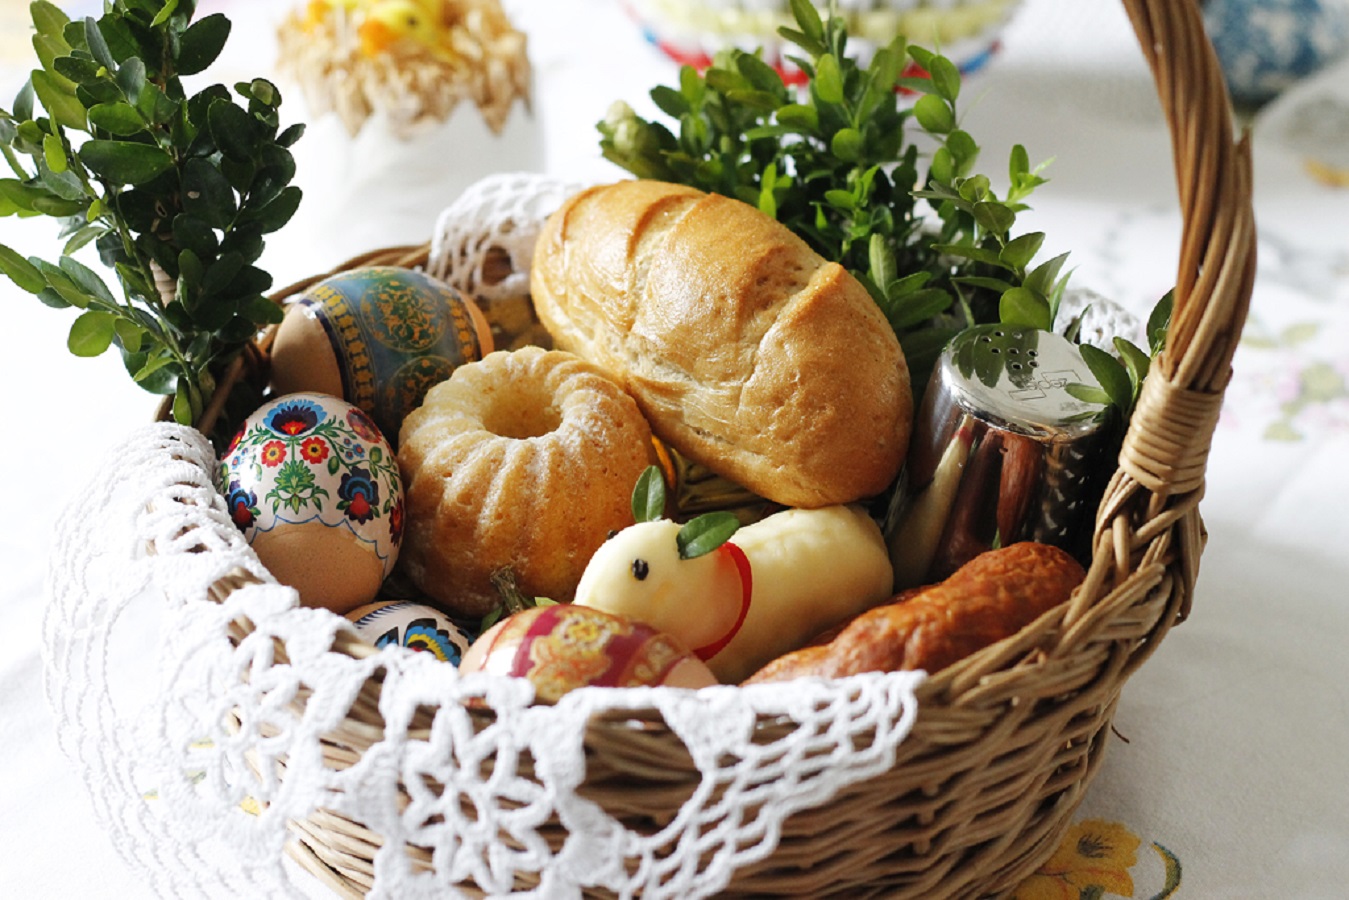 Koszyk Wielkanocny - Co Włożyć do Środka i Jak Go Udekorować?